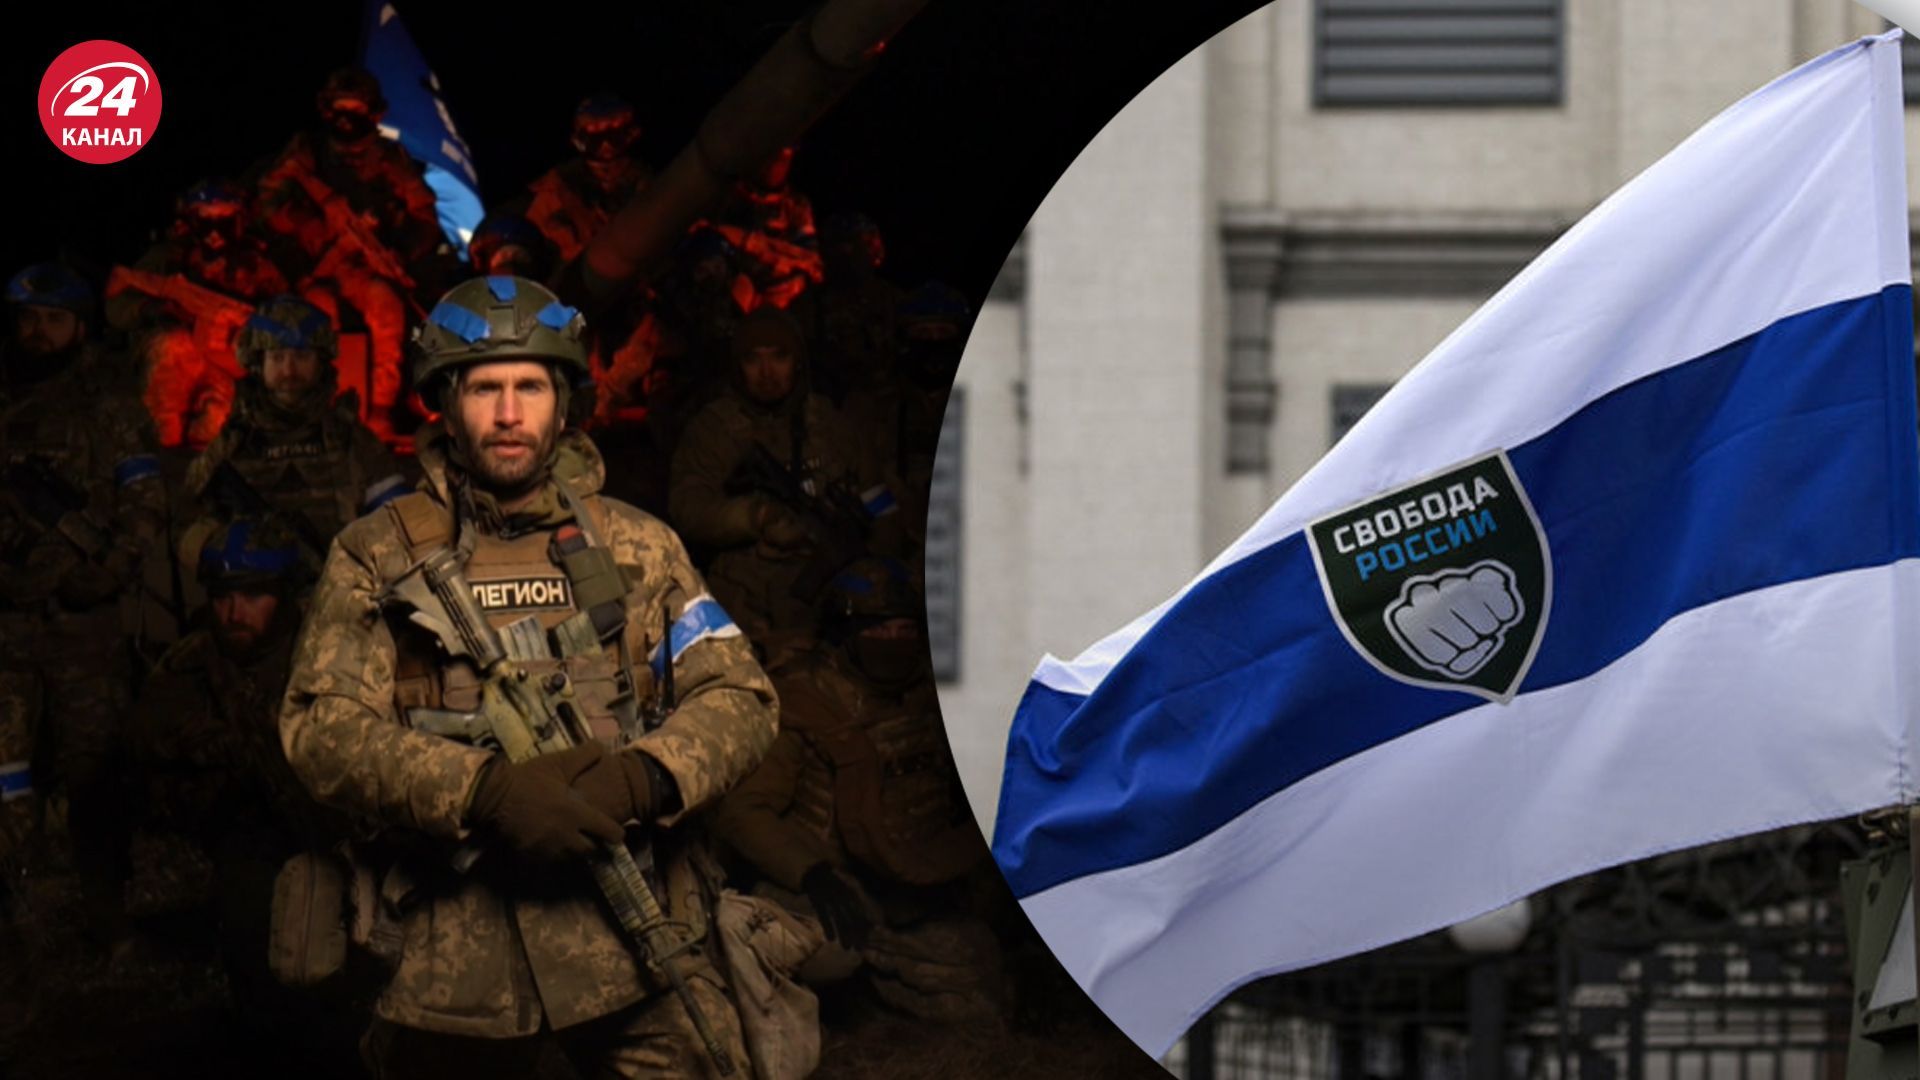 Можете здатися в полон або перейти на наш бік, – «Свобода Росії» до окупантів, які наступають на Харківщині - 24 Канал